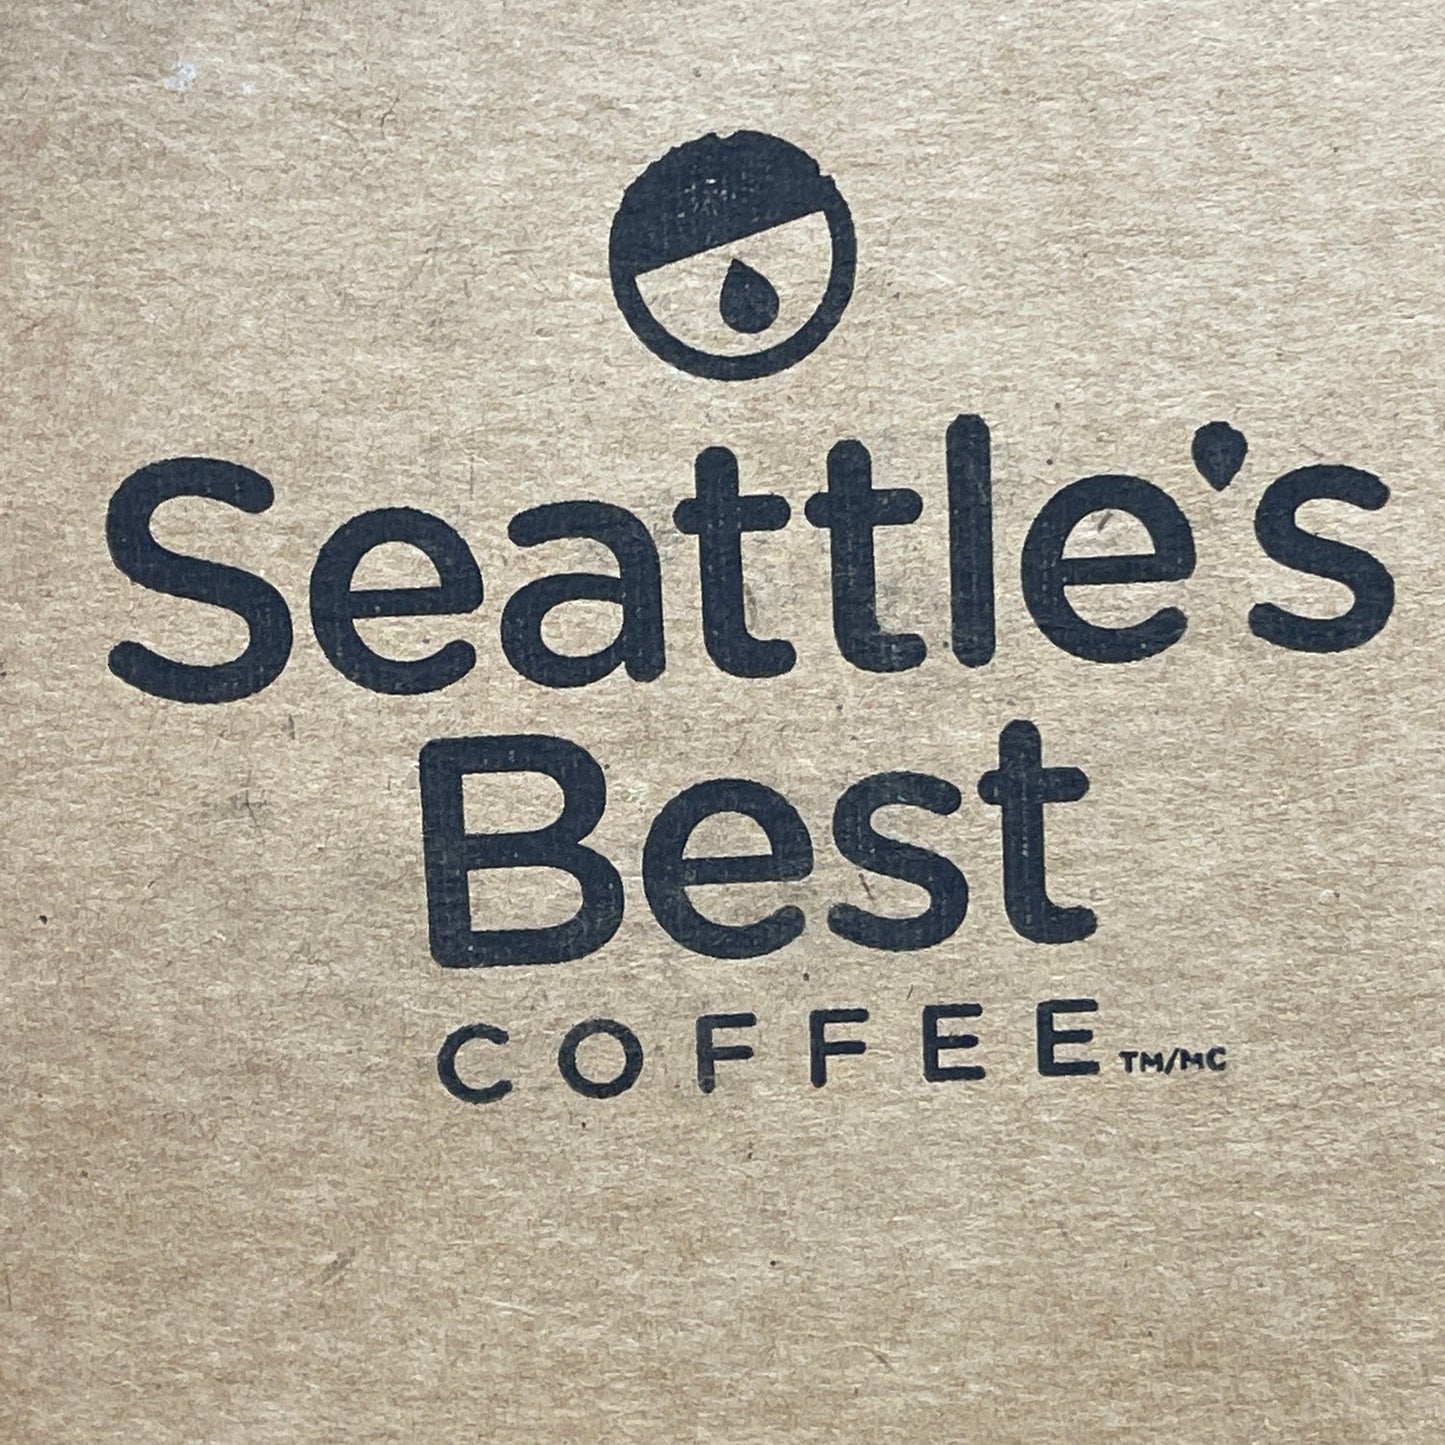 SEATTLE’S BEST COFFEE Portside Blend 6 oz pkgs 32x /case Best By: 5/23  (AS-IS) #11008562